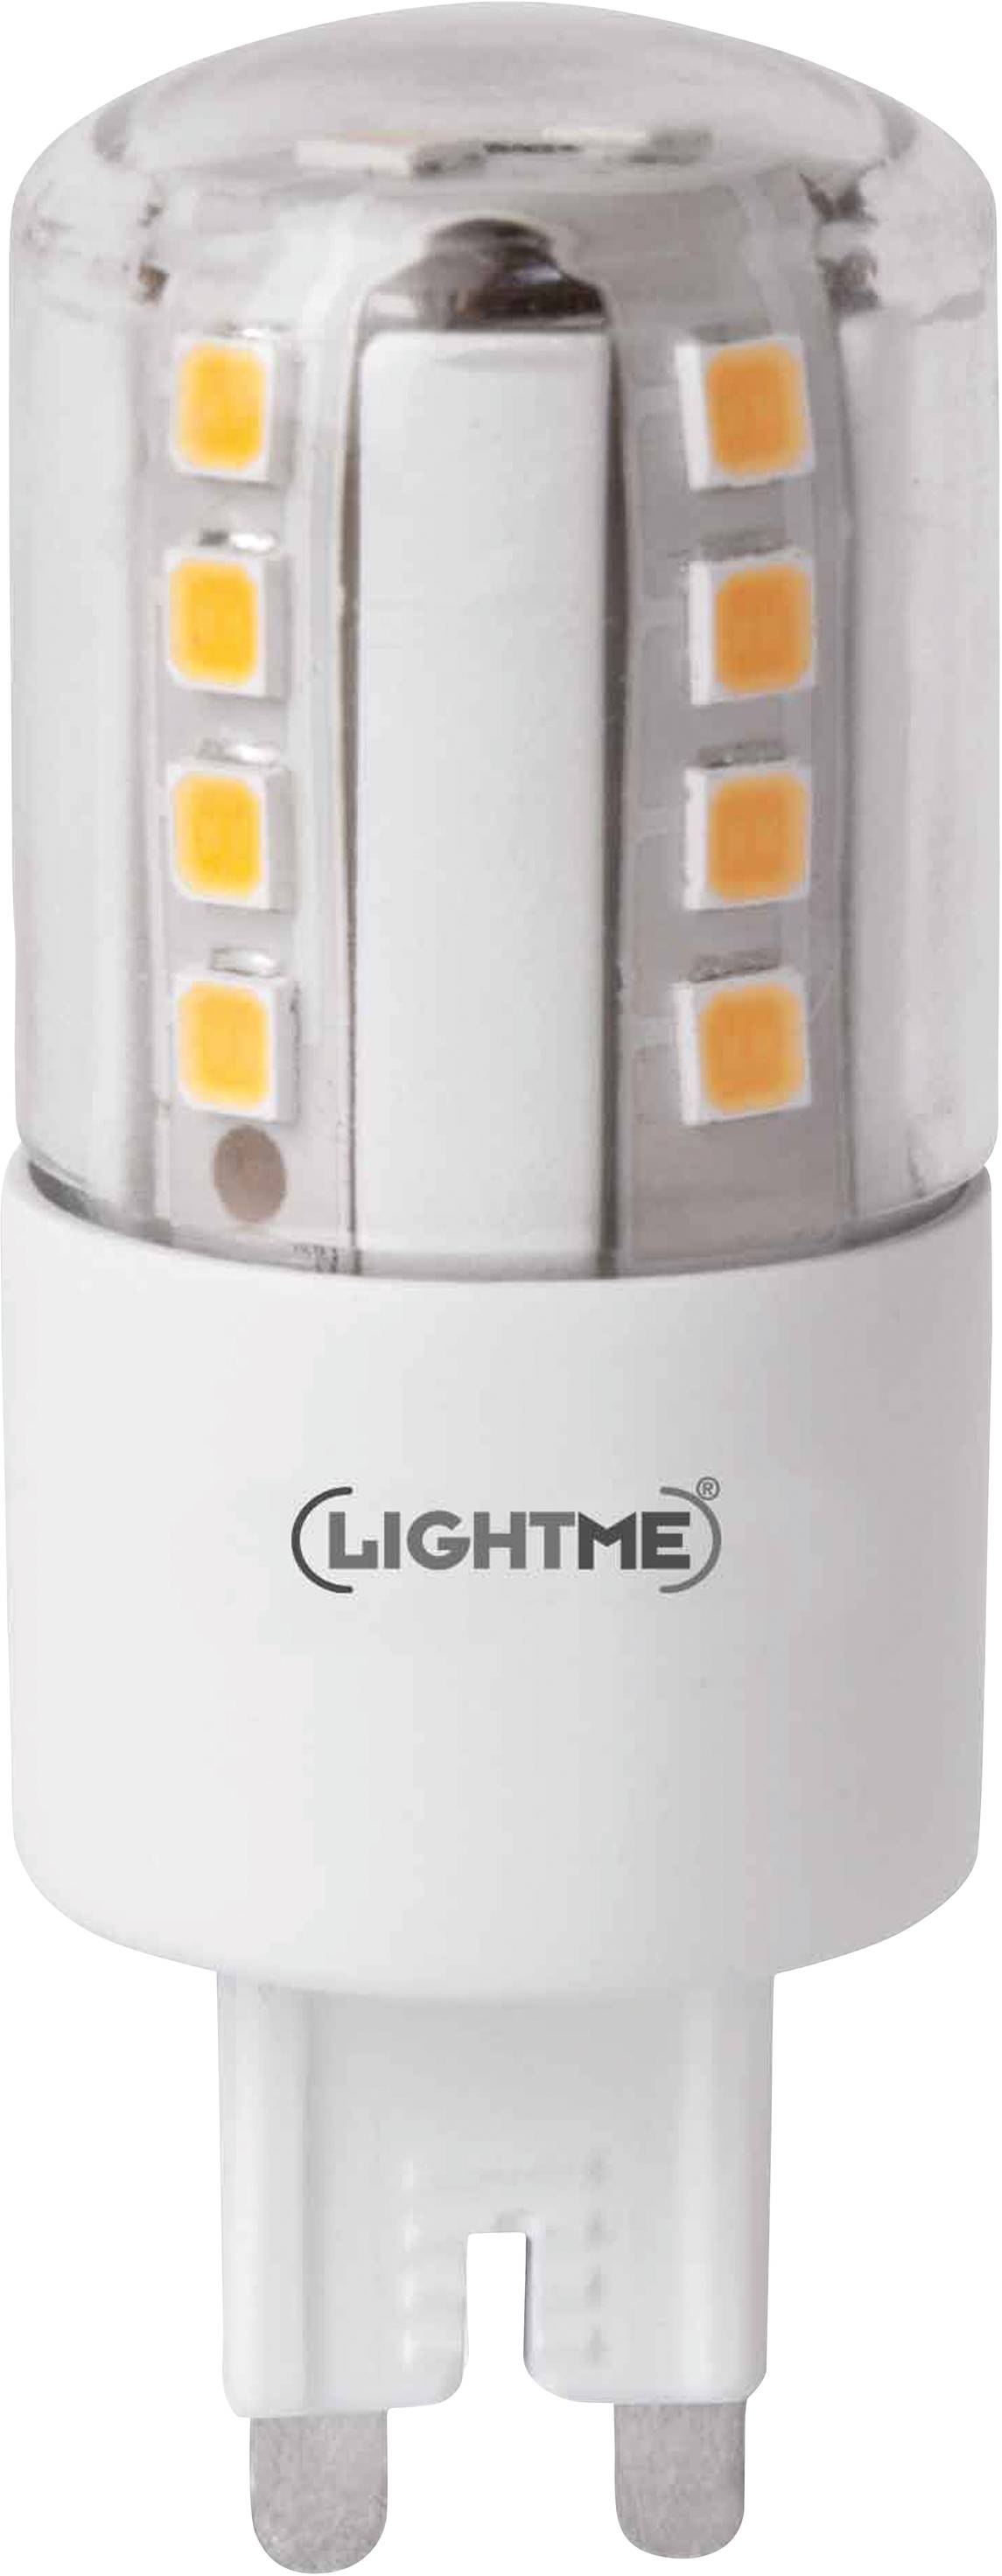 LIGHTME LED EEK A++ (A++ - E) G9 Stiftsockel 4.5 W = 47 W Warmweiß (Ø x L) 24 mm x 64 mm nicht